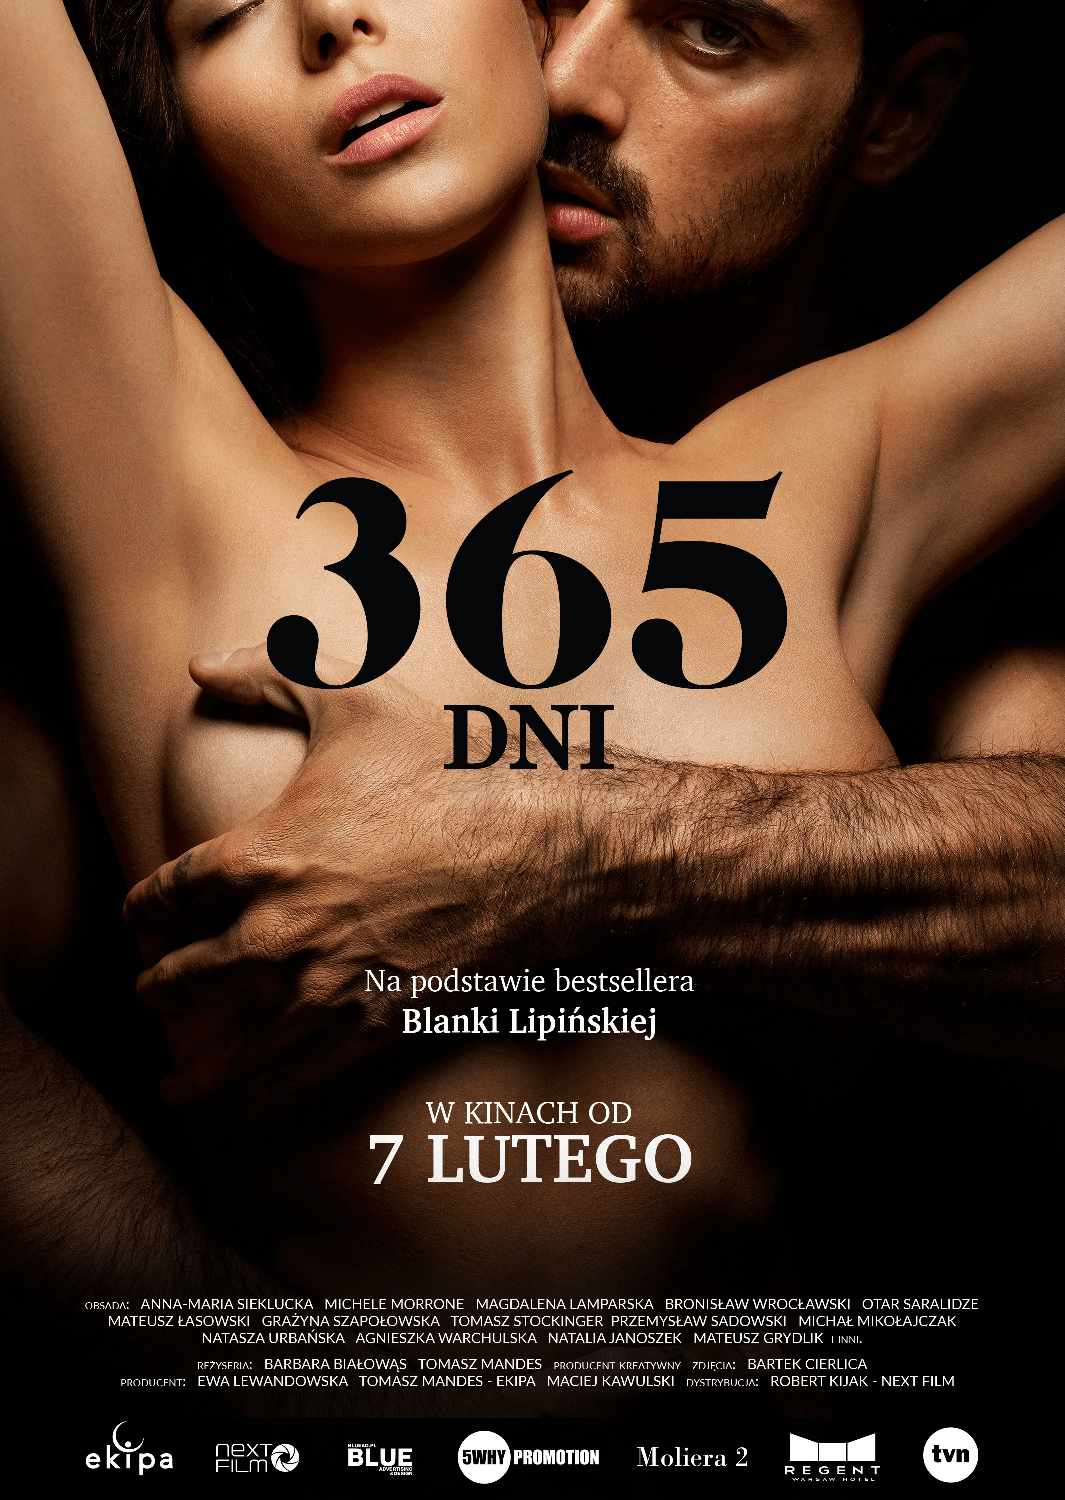 Film Med Sex